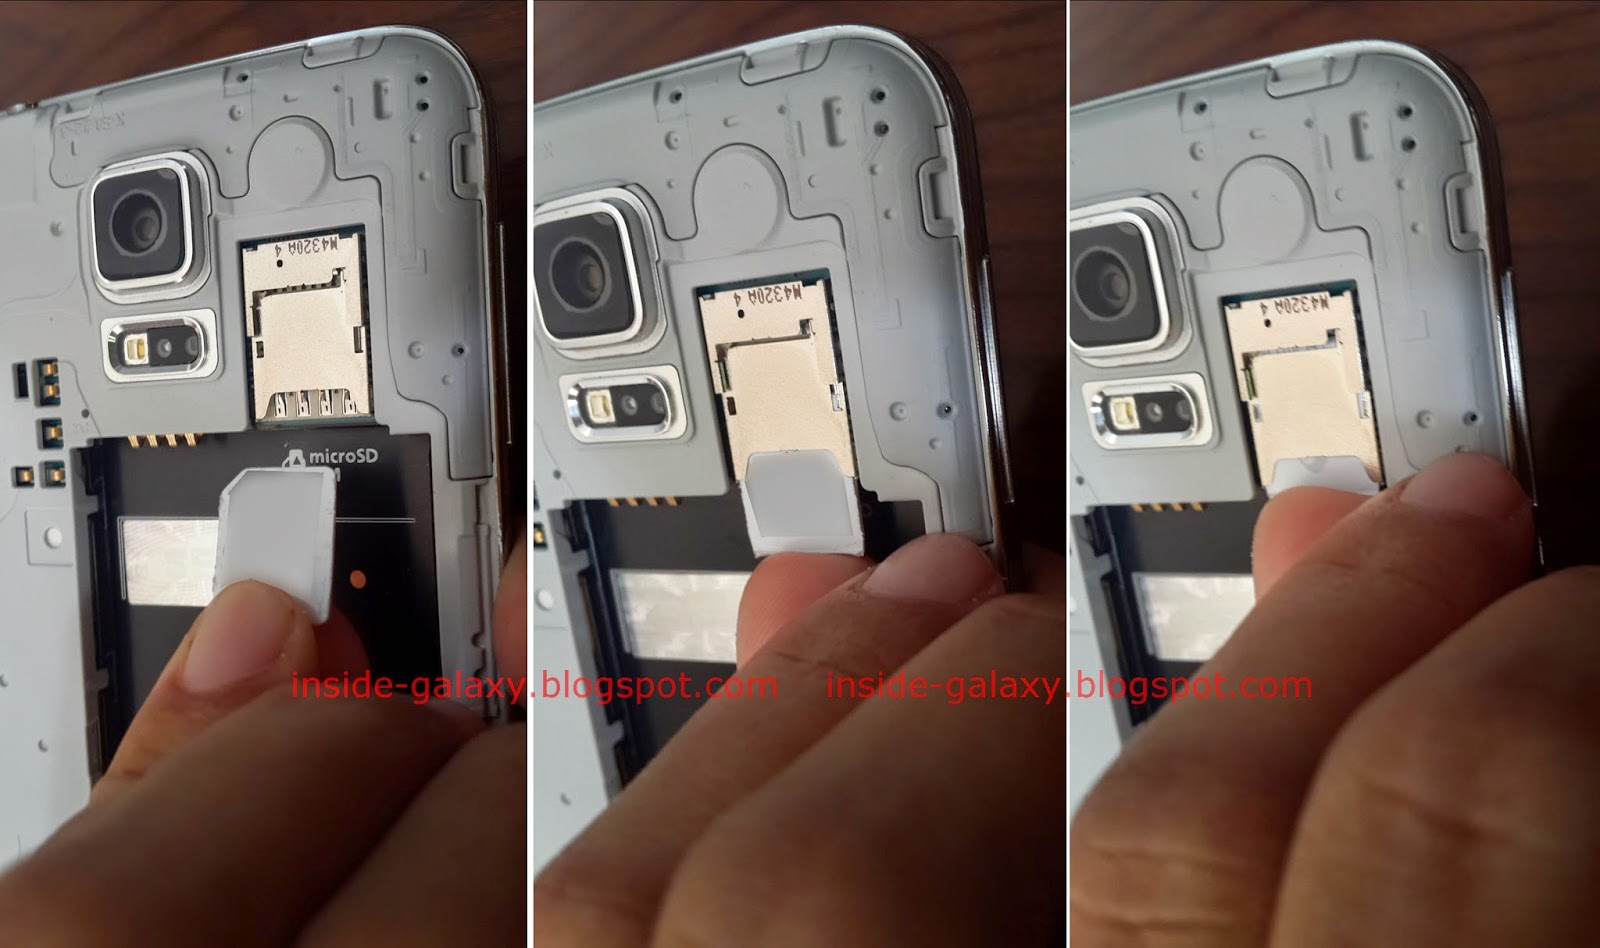 Inside Galaxy: Samsung Galaxy How to Insert or a Micro SIM Card